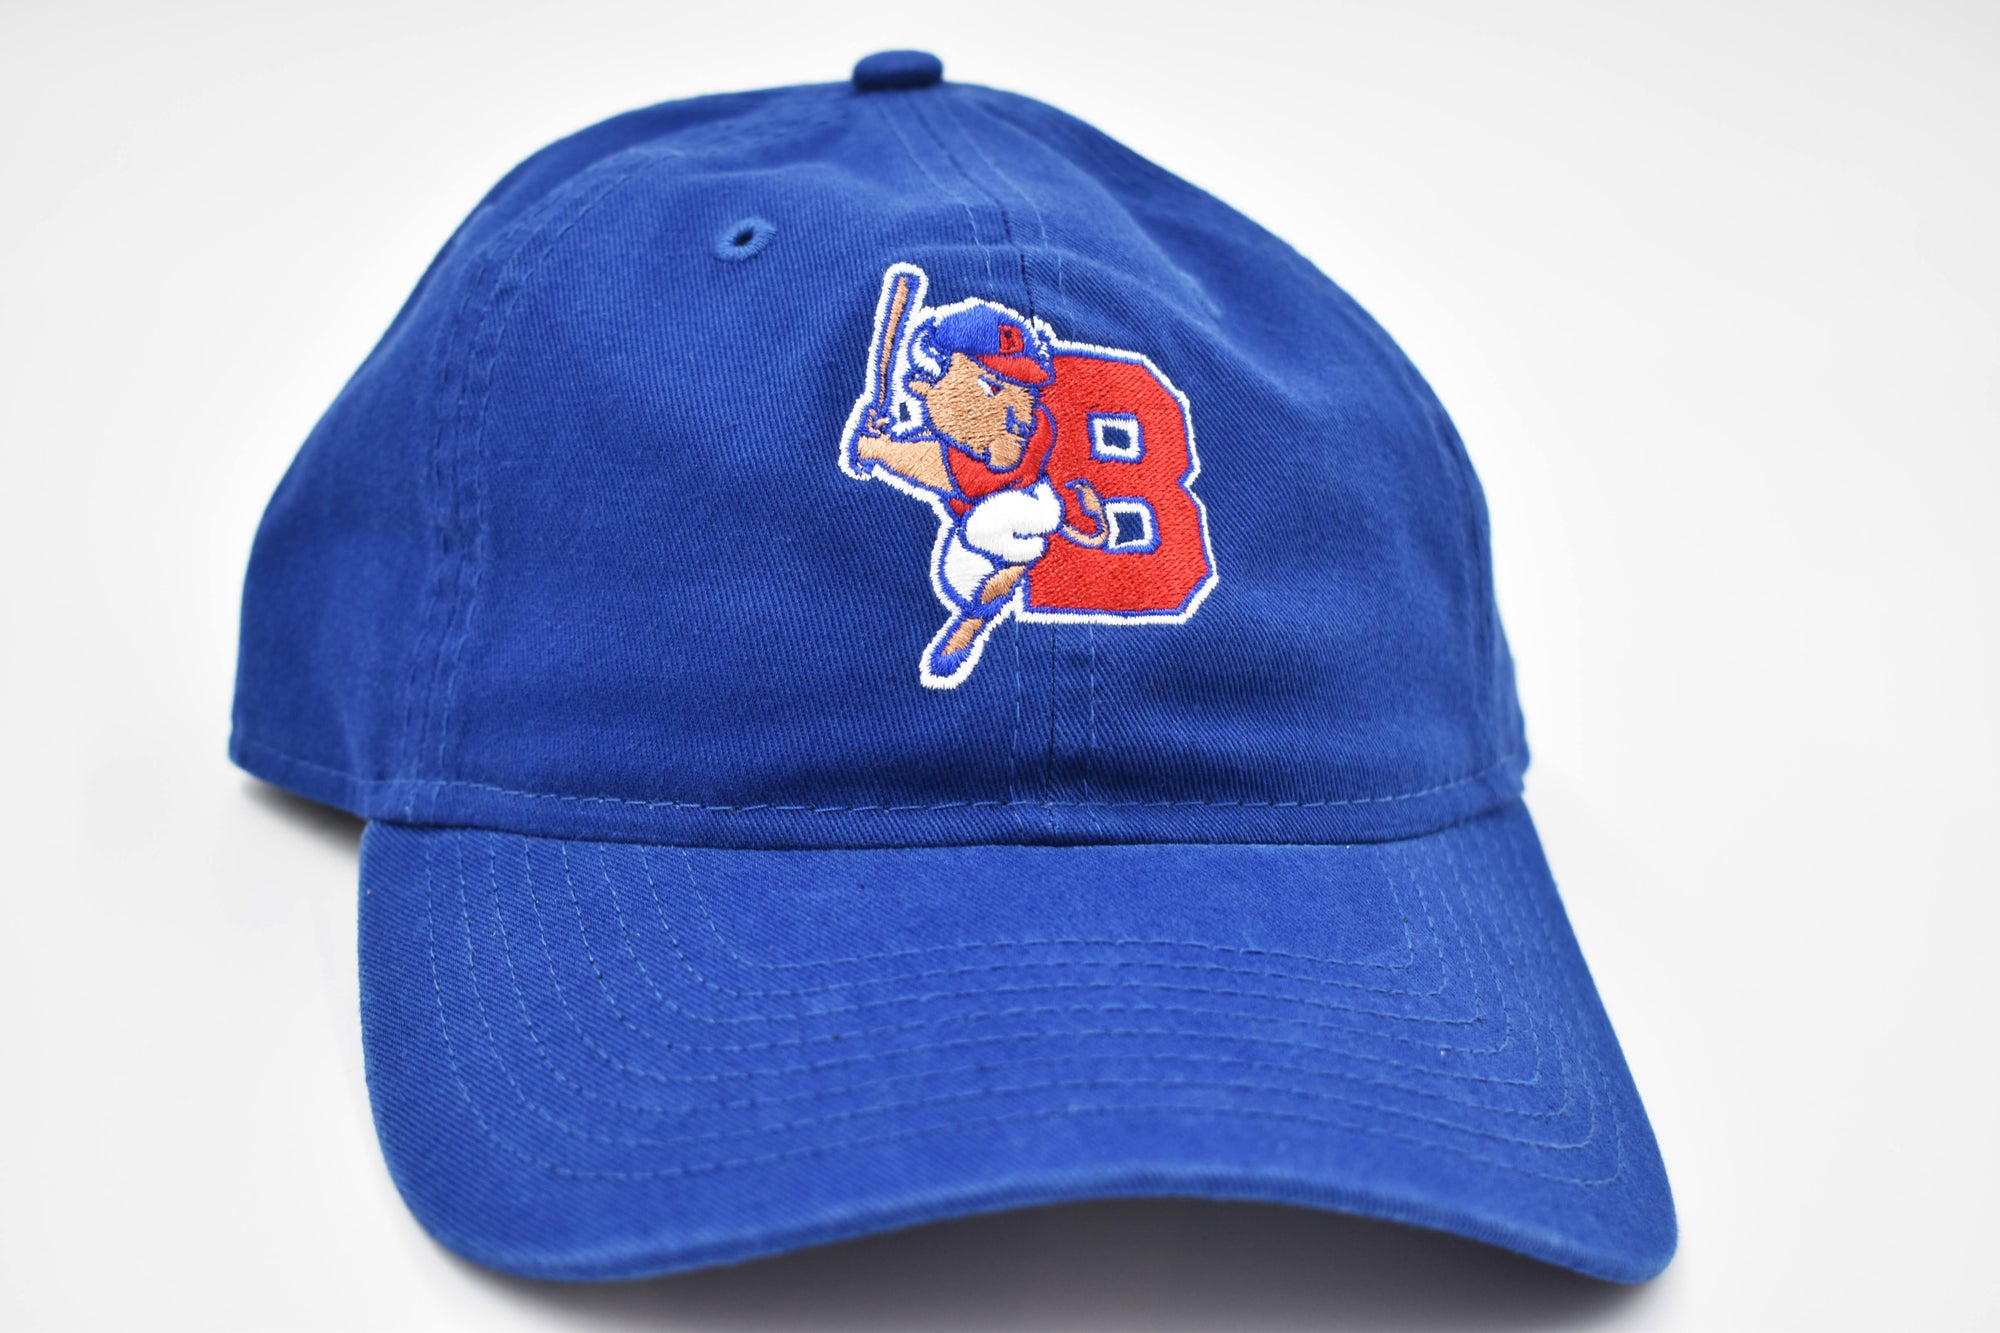 New Era Buffalo Bisons Royal Blue Adjustable Hat